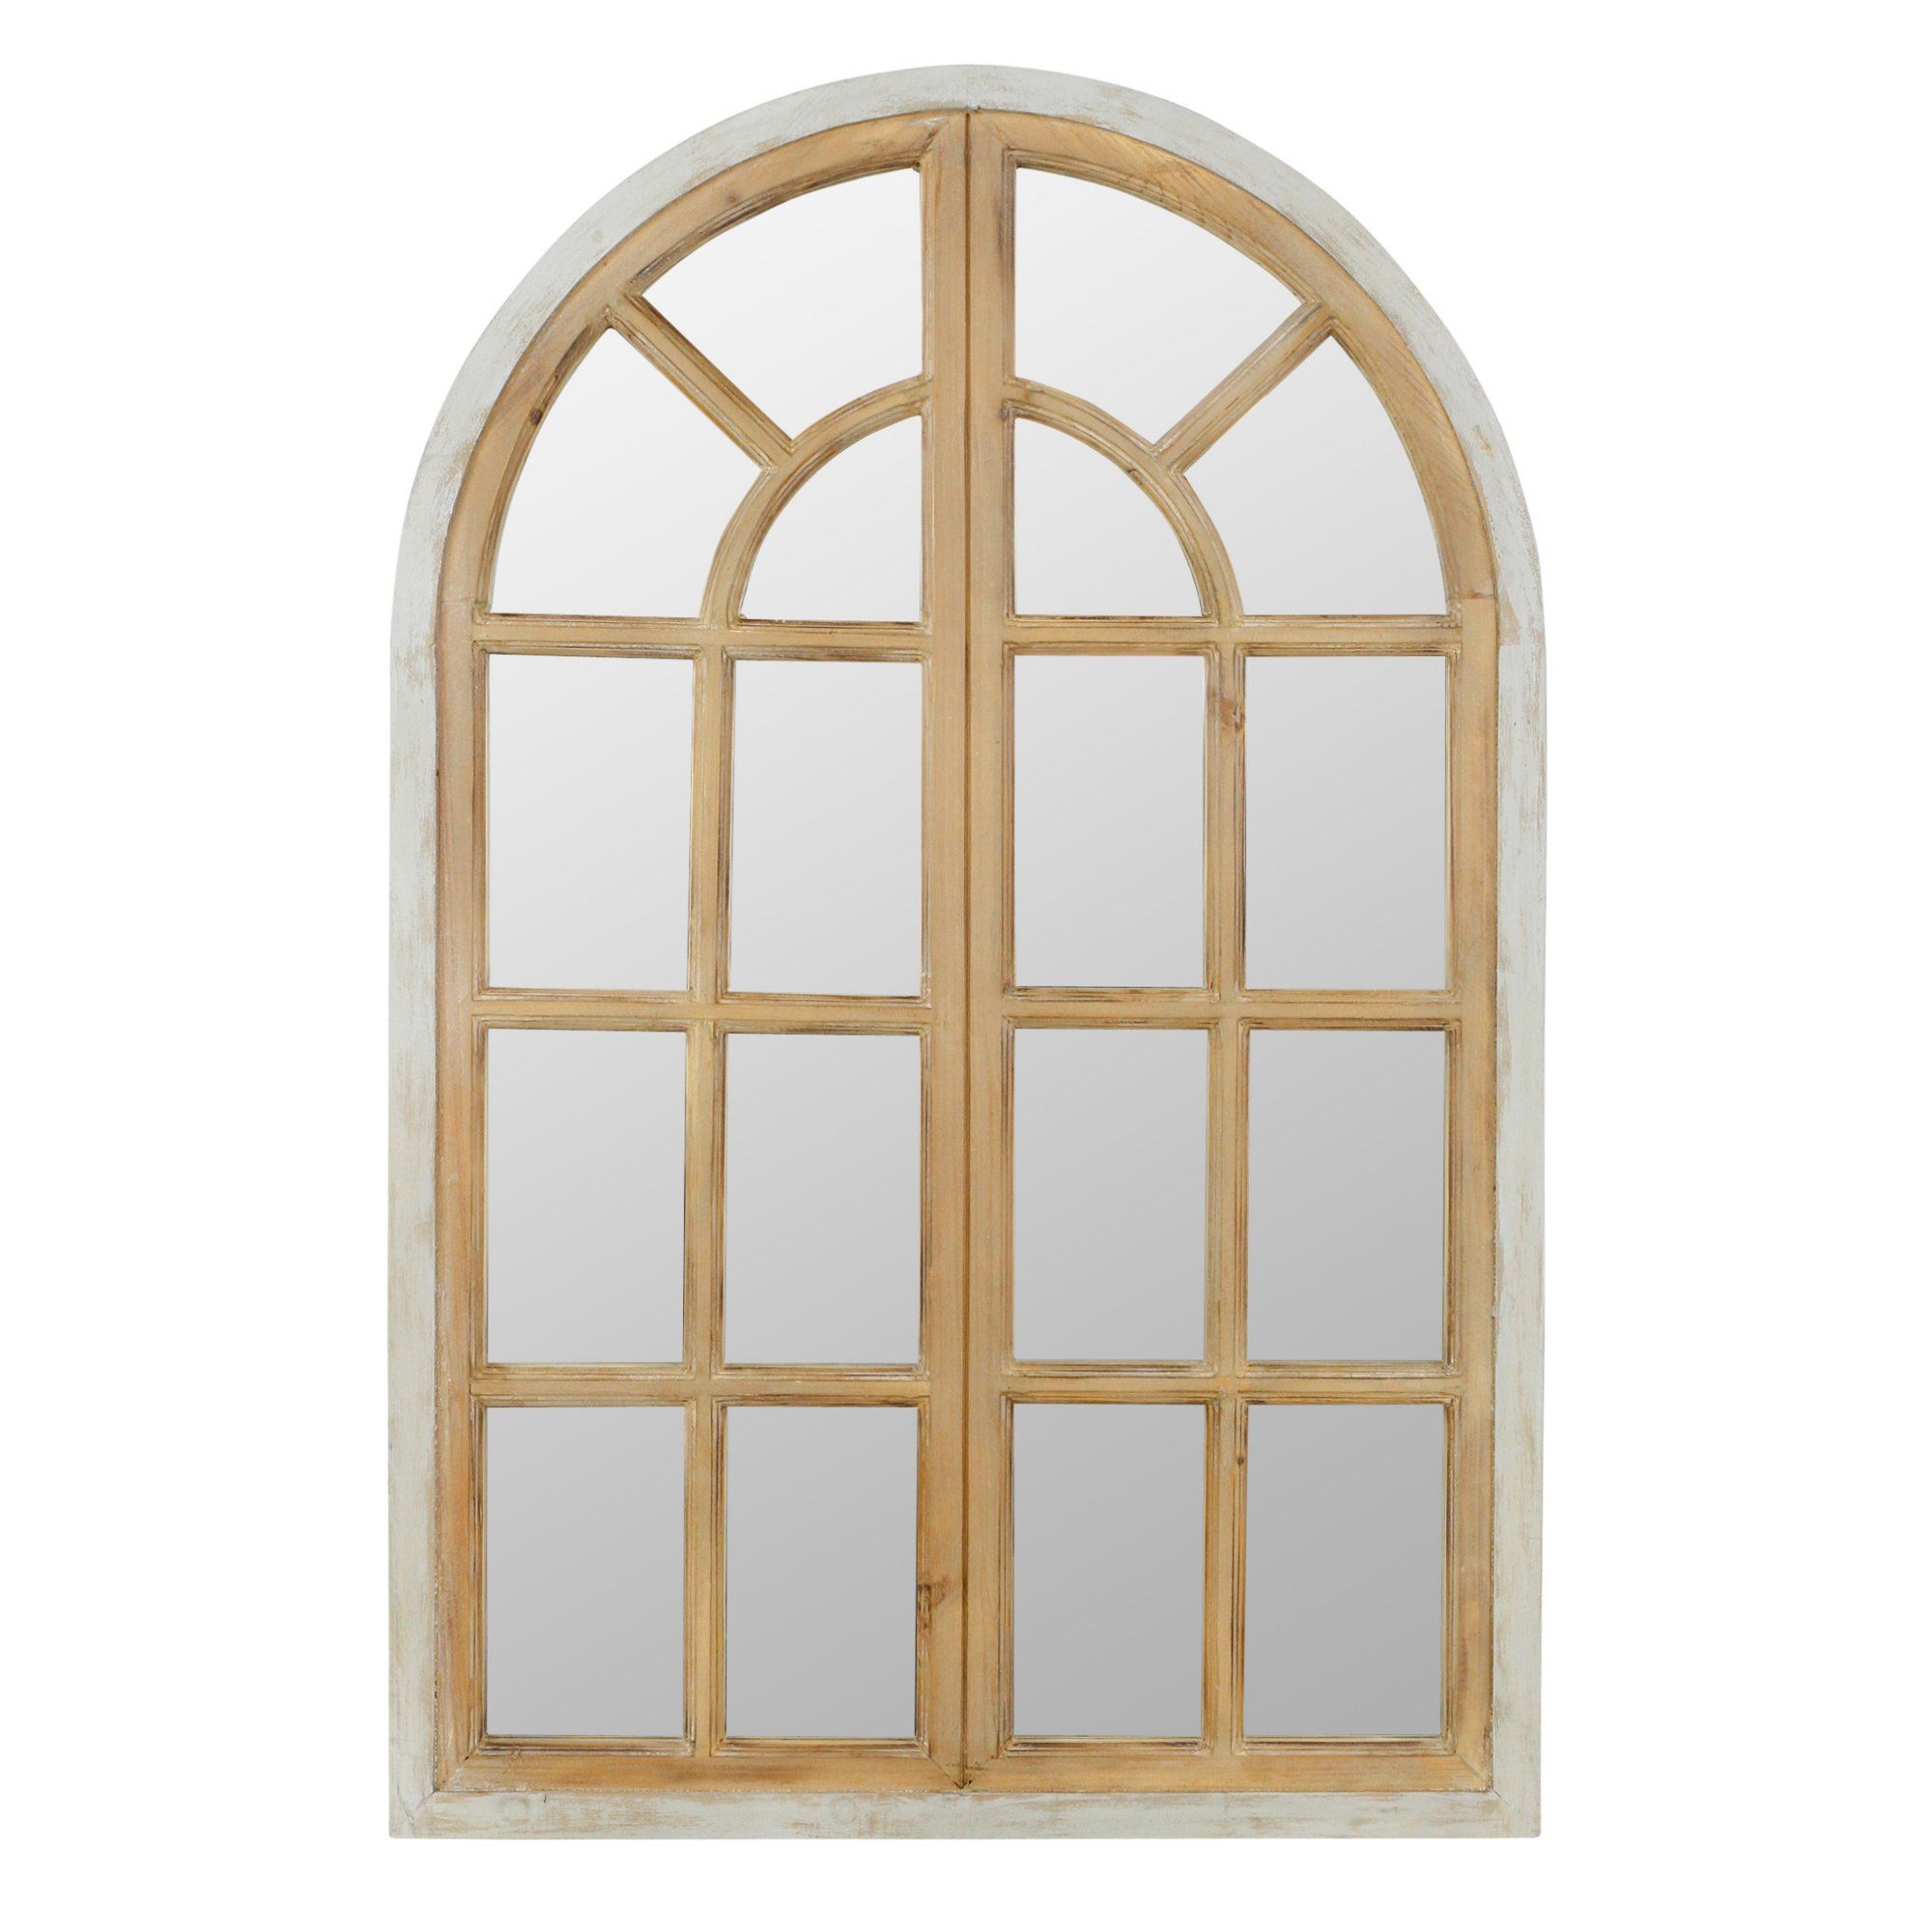 Athena Farmhouse Arch Window Mirror 43" x 28" by Aspire | Walmart (US)